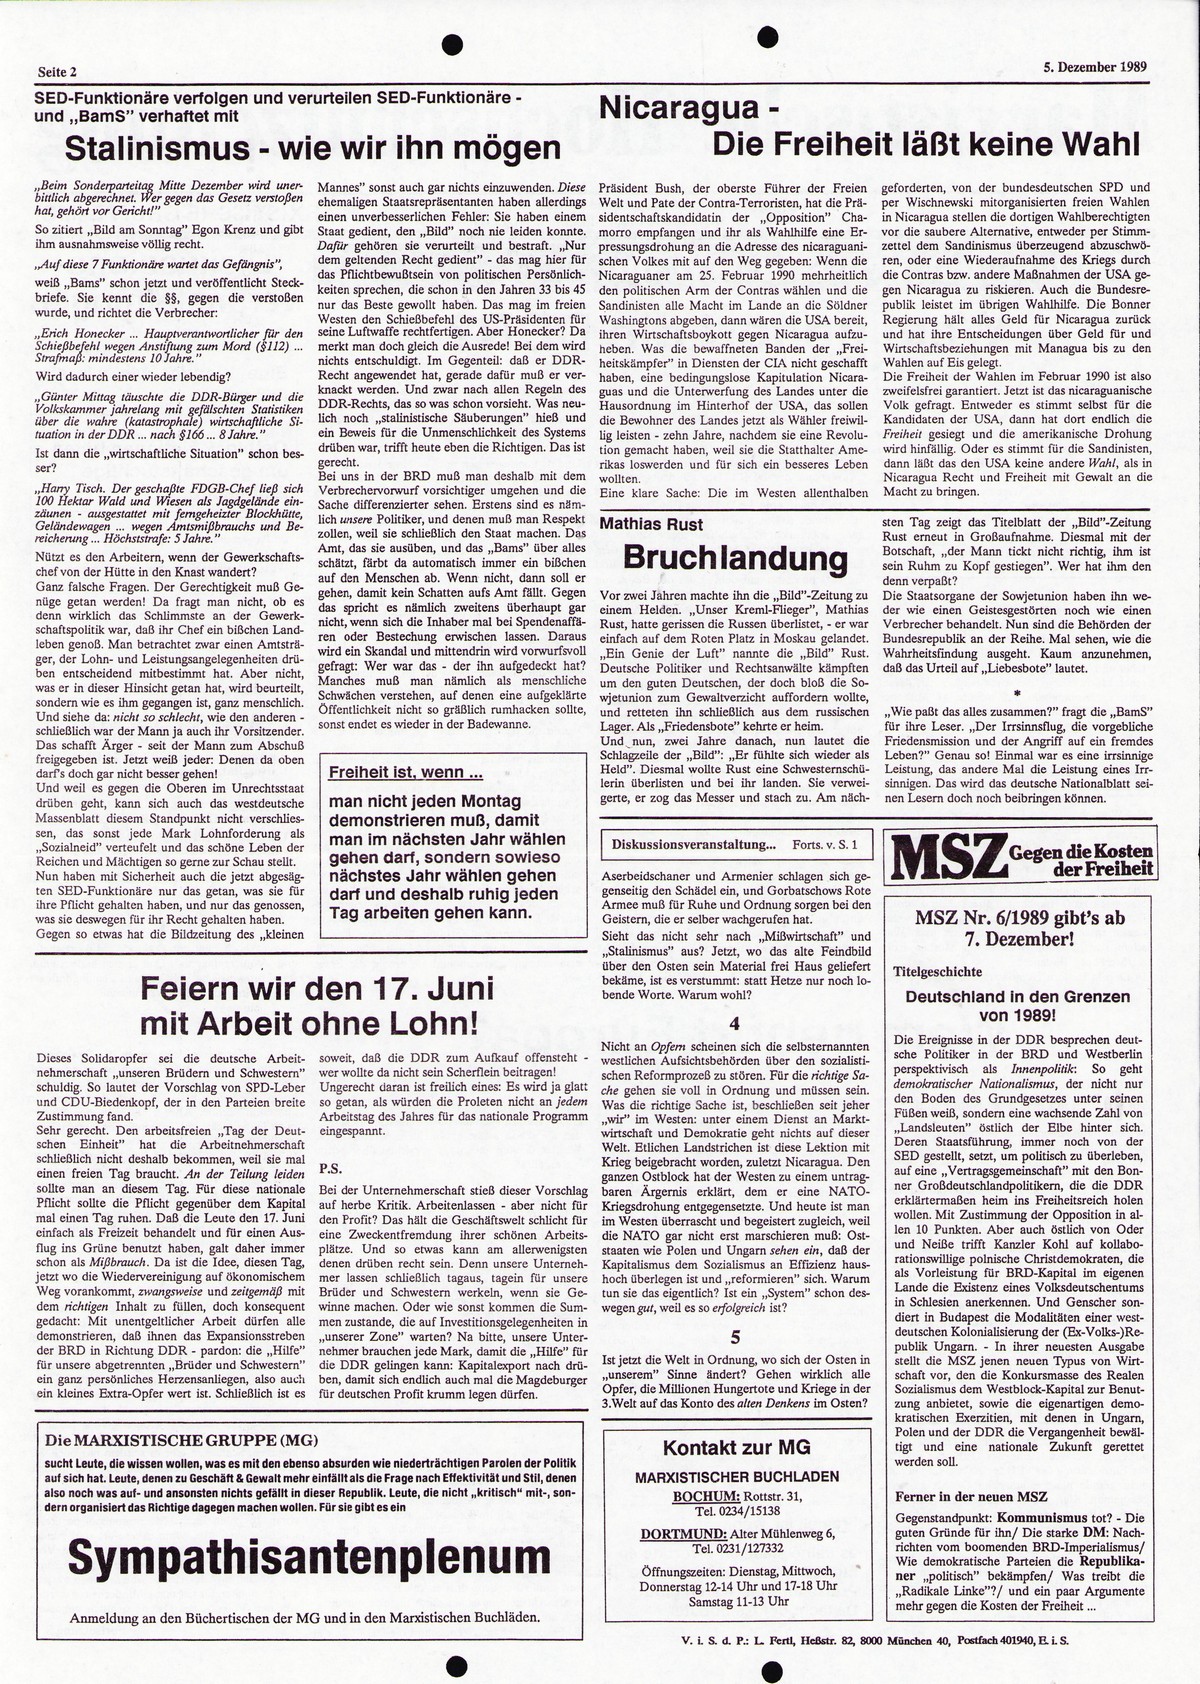 Ruhrgebiet_MG_Marxistische_Hochschulzeitung_19891205_002